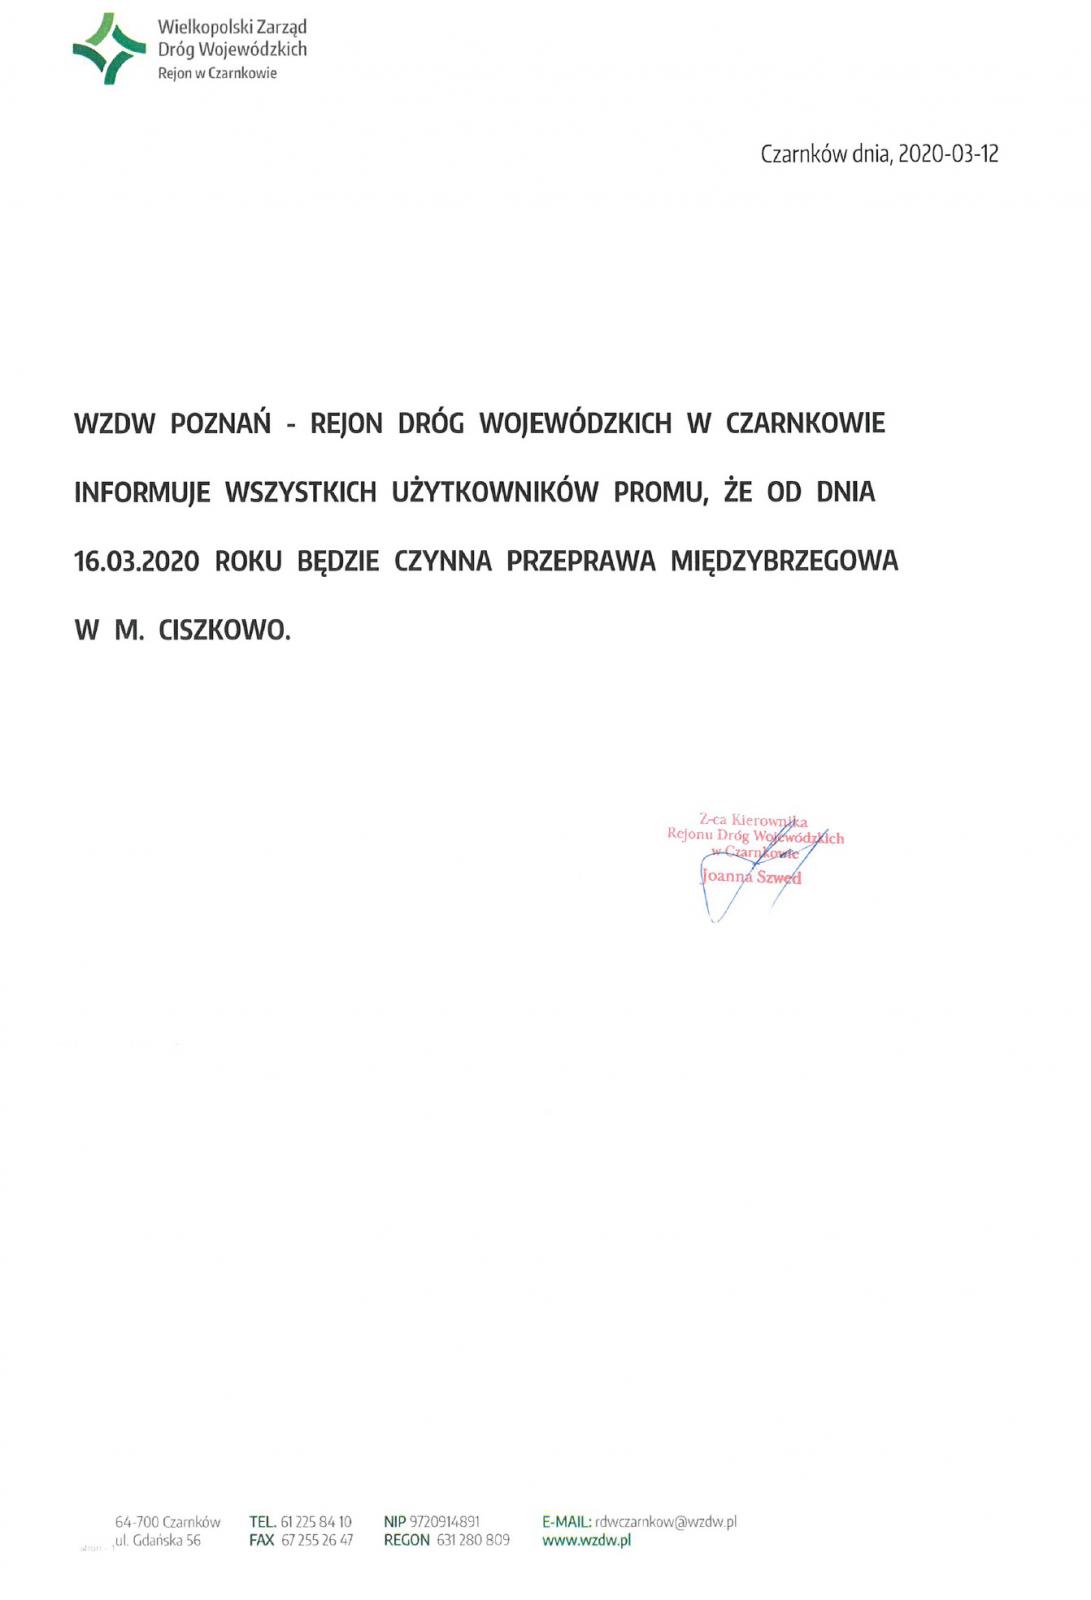 WZDW - Rejon Dróg Wojewódzkich w Czarnkowie informuje wszystkich użytkowników promu, że od 16 marca 2020 roku czynna będzie międzybrzegowa przeprawa promowa w Ciszkowie 